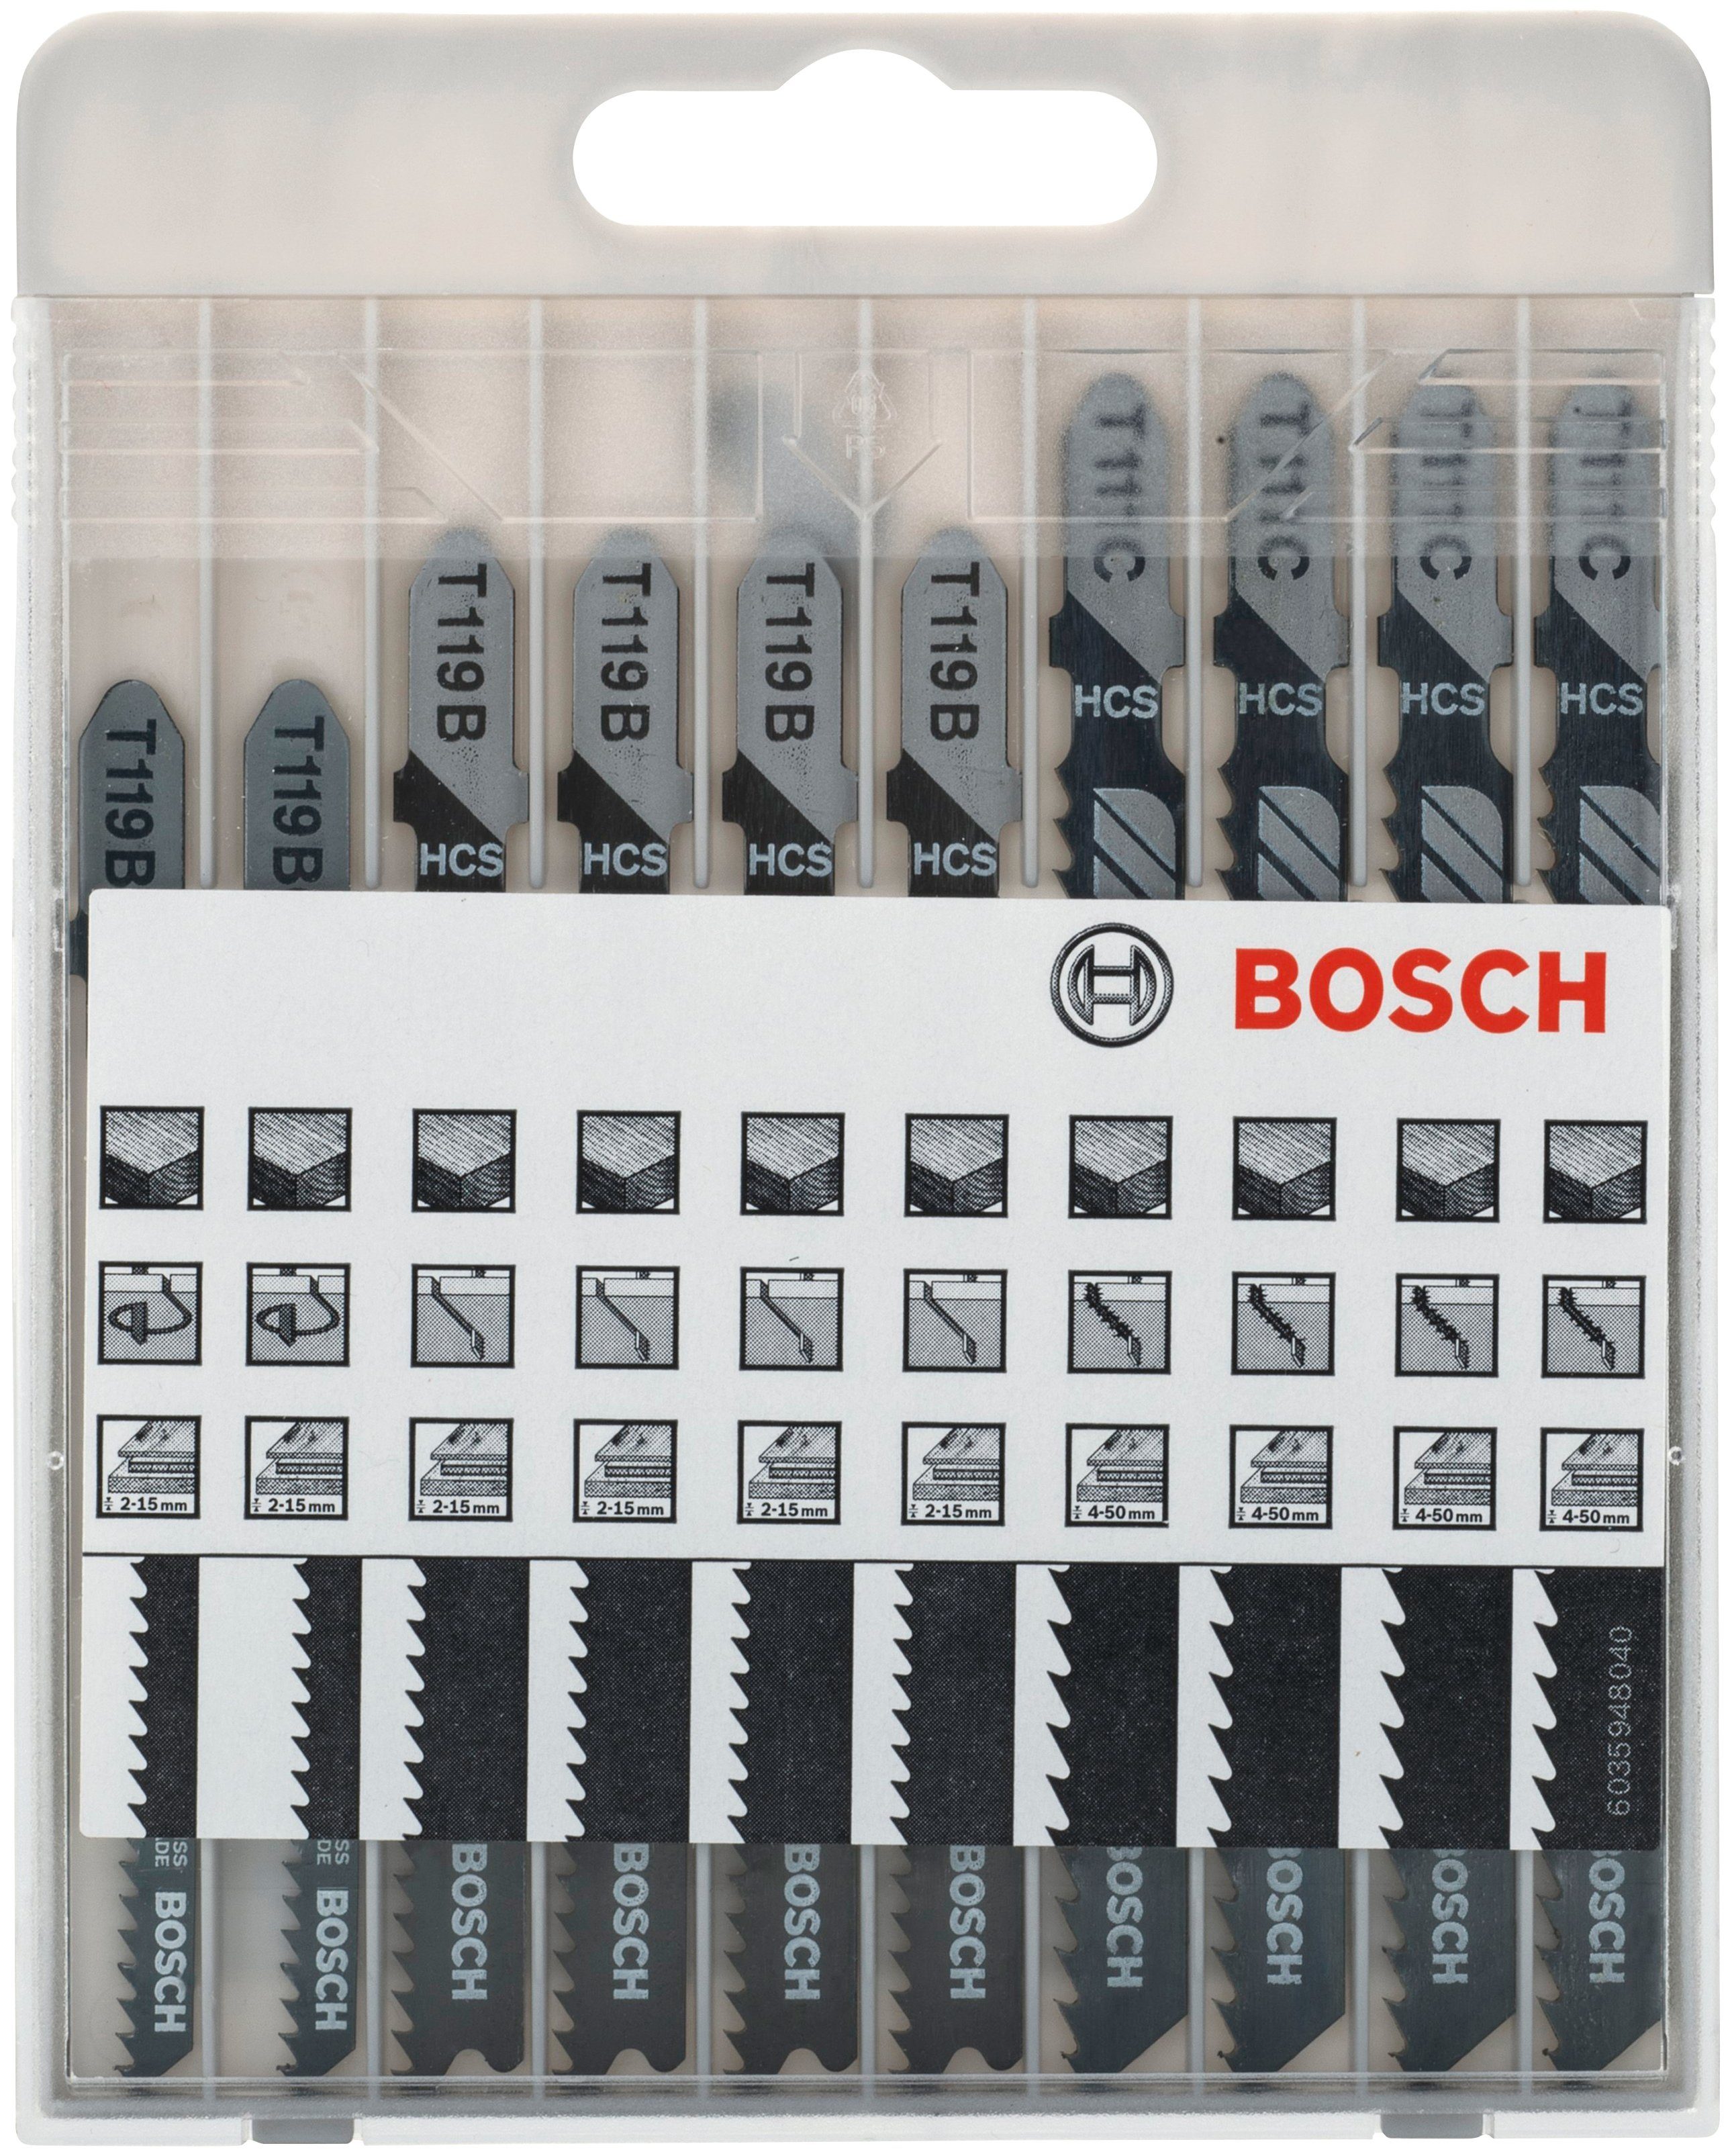 Bosch Professional Säbelsägeblatt 10tlg. Stichsägeblatt-Set Basic for Wood, T 119 BO (2x); T 119 B (4x); T 111 C (4x)